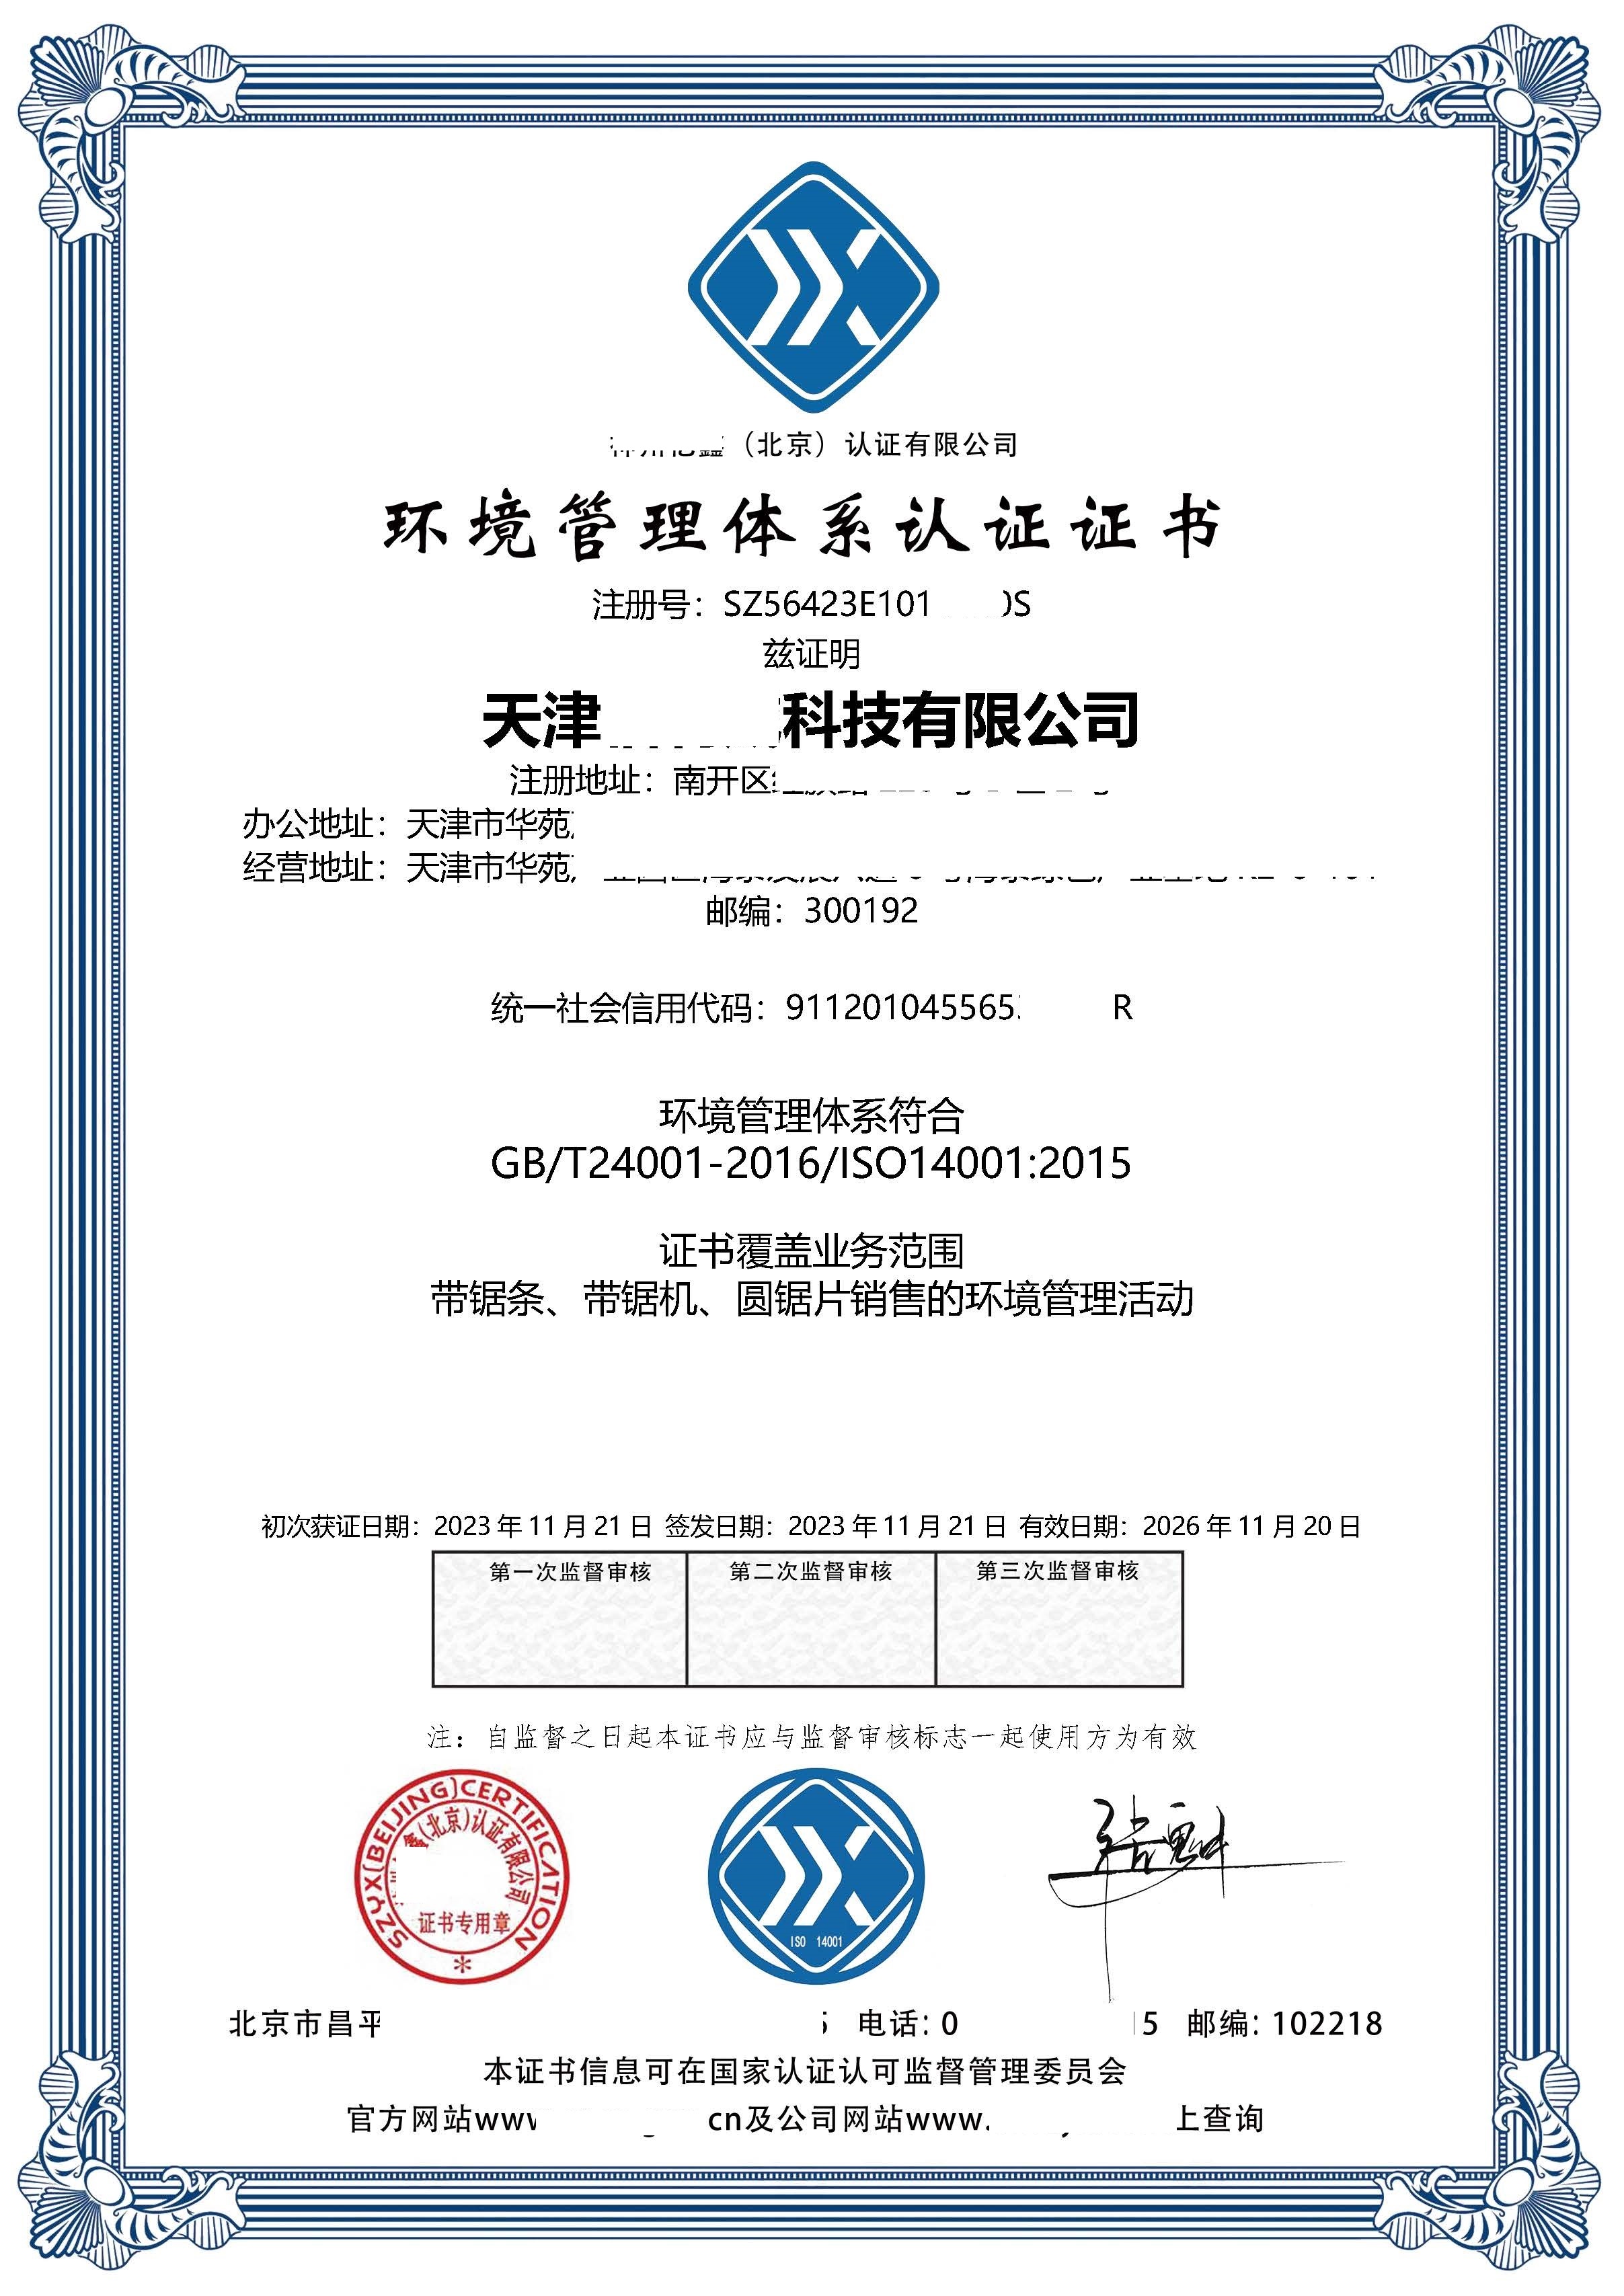 恭喜  天津***科技有限公司  获得ISO9001质量、ISO14001环境、ISO45001职业健康安全管理体系认证证书